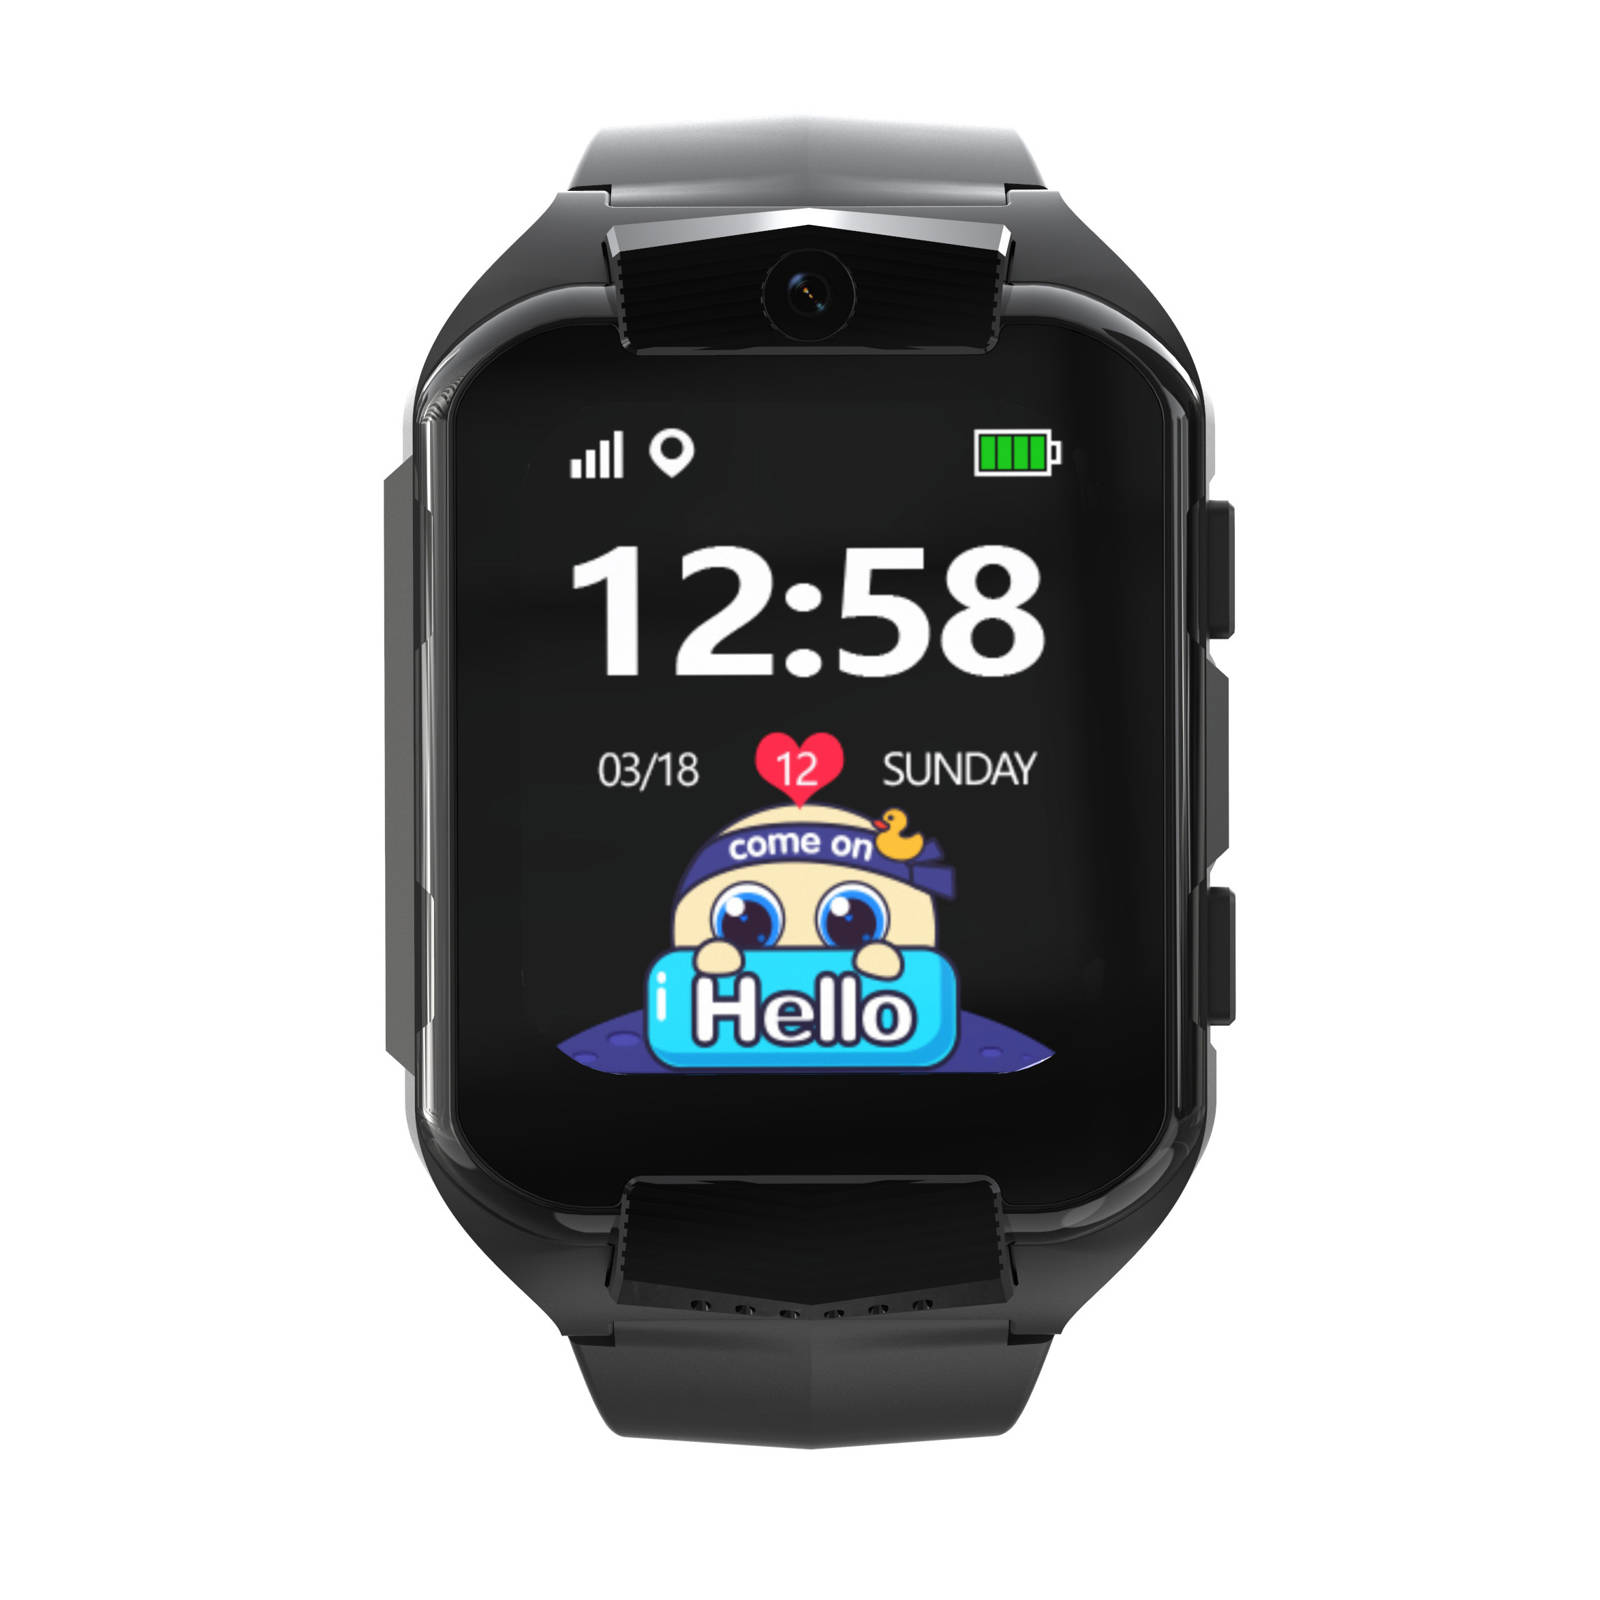 Zegarek dla dziecka Smartwatch Pacific 32-01 czarny